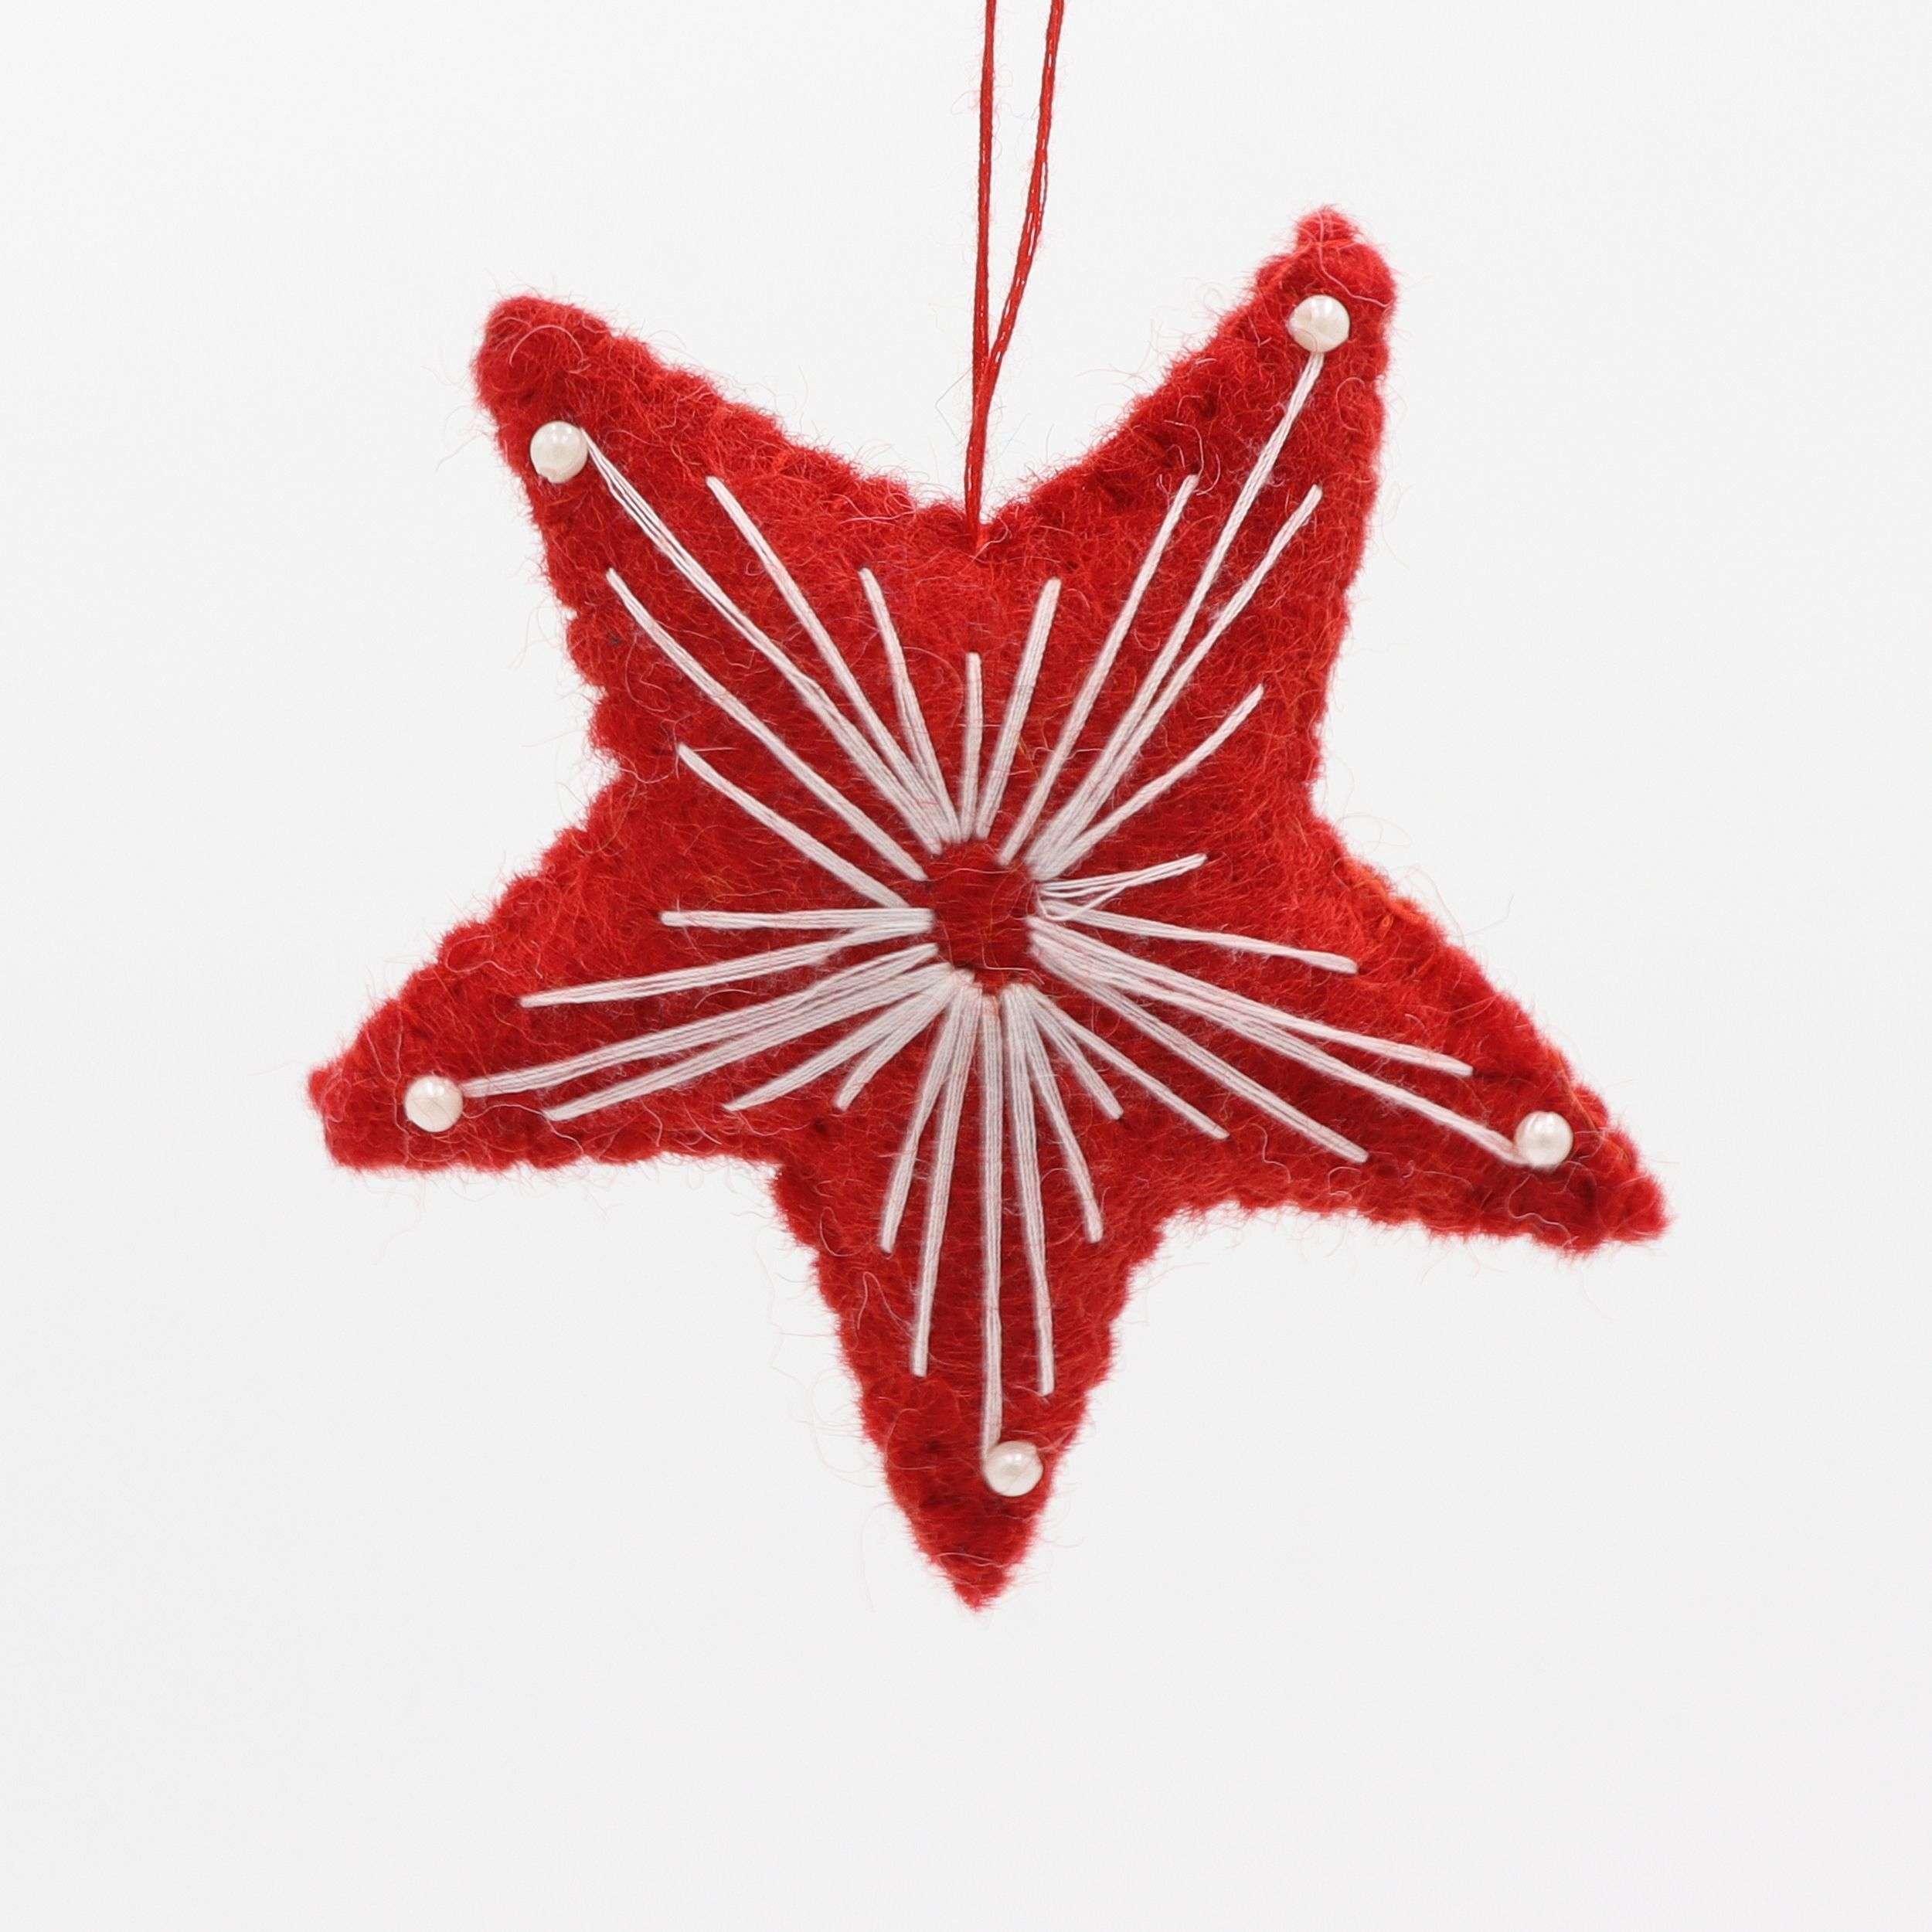 Weihnachtsstern - Stern als Weihnachtsschmuck mit aufgenähten Perlen - Anhänger aus Filz - Geschenkanhänger oder Baumschmuck - echte Handarbeit und fair gehandelt